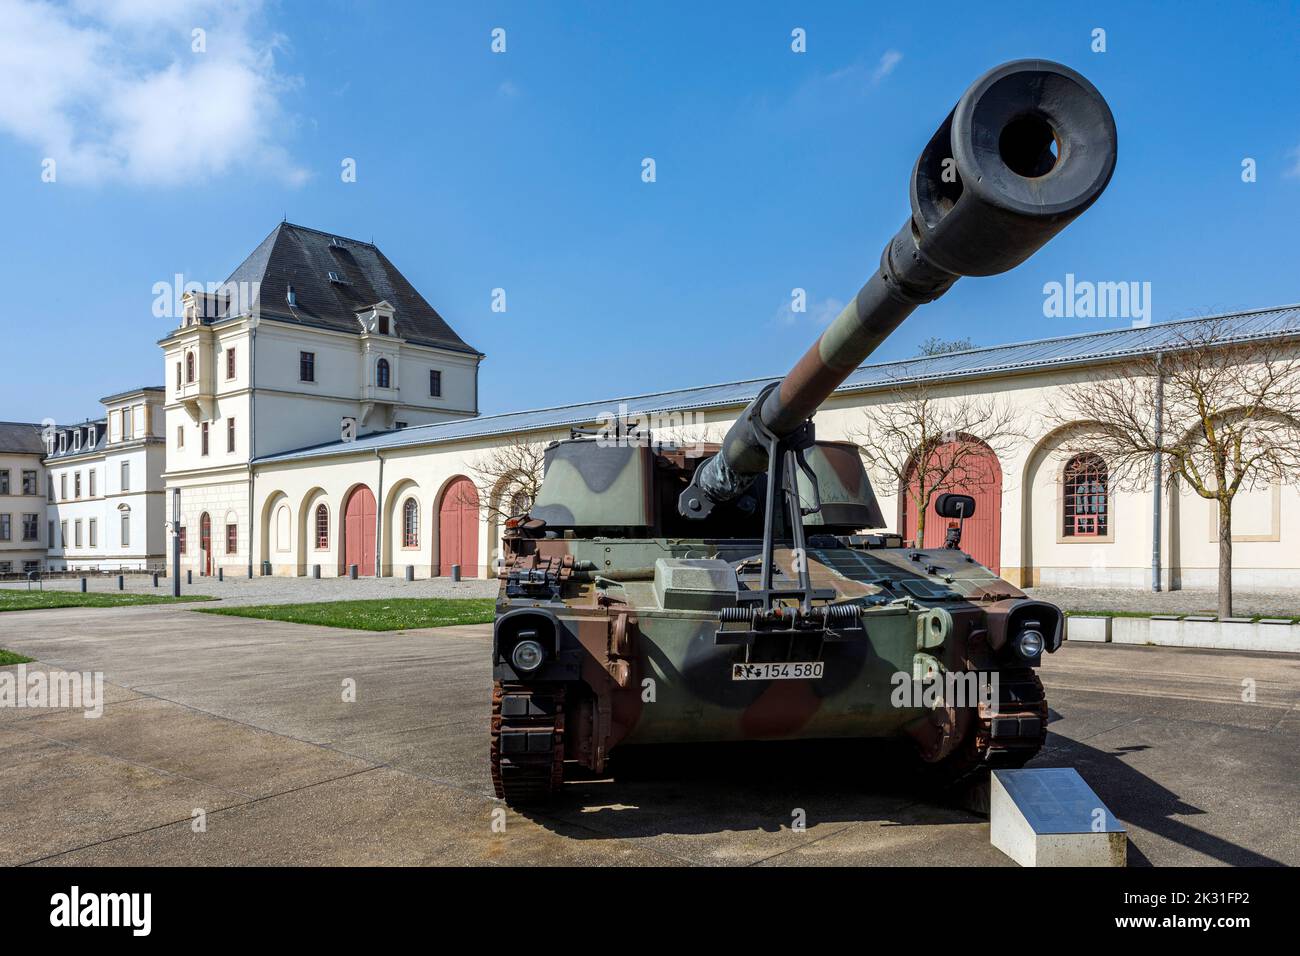 Militärhistorisches Museum der Bundeswehr a Dresda, Panzerhauabitze M109 auf dem Außengelände neben dem Hauptarsenal Foto Stock